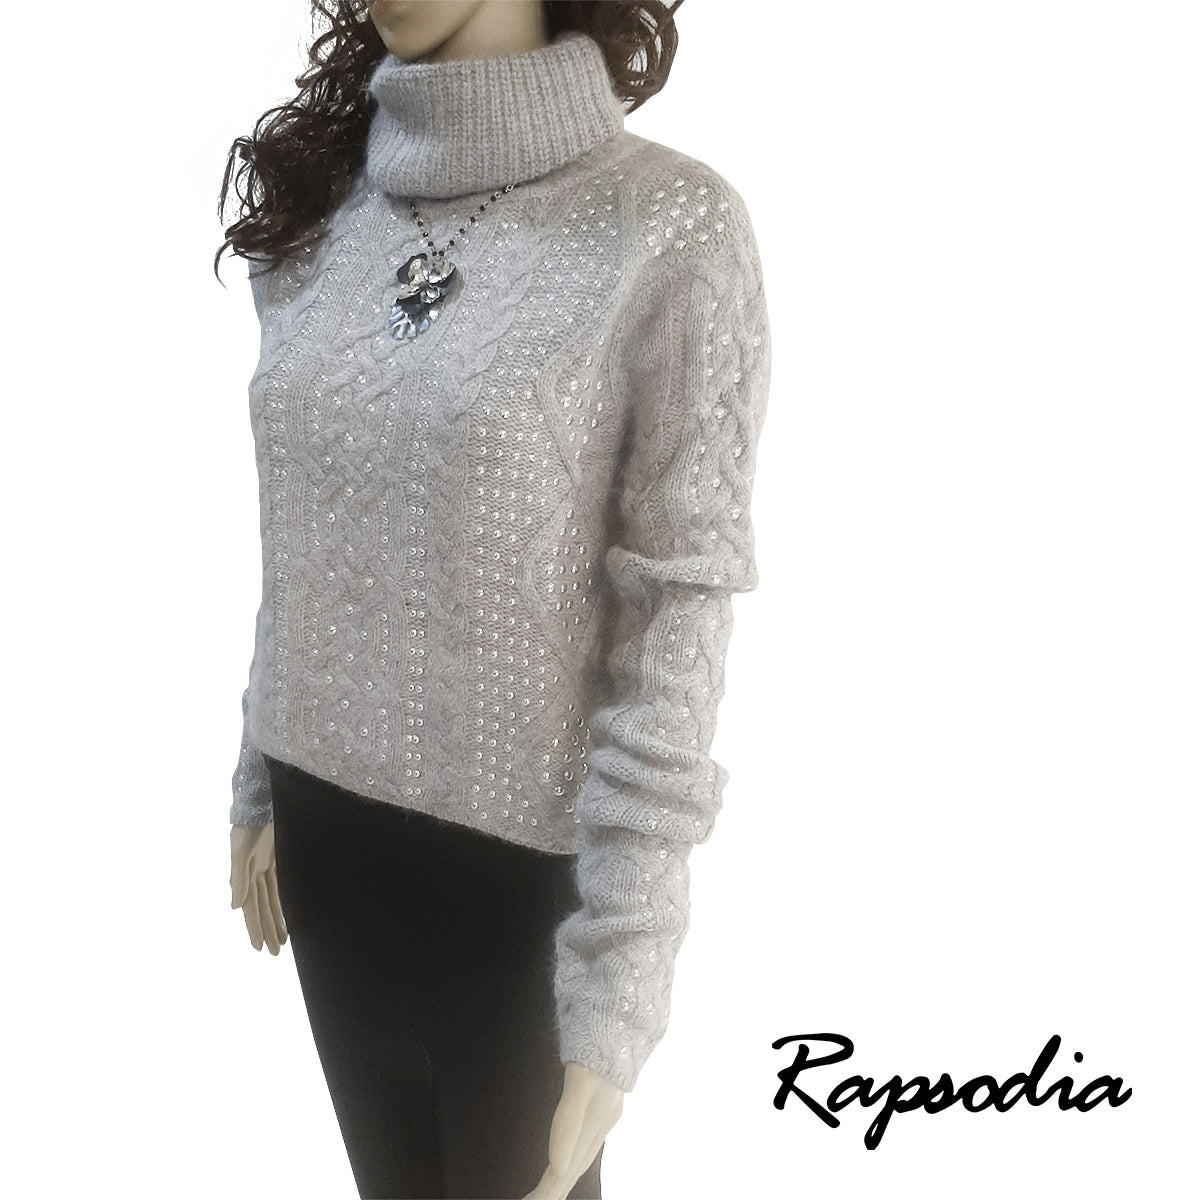 Sweater Rapsodia Nollan Gris